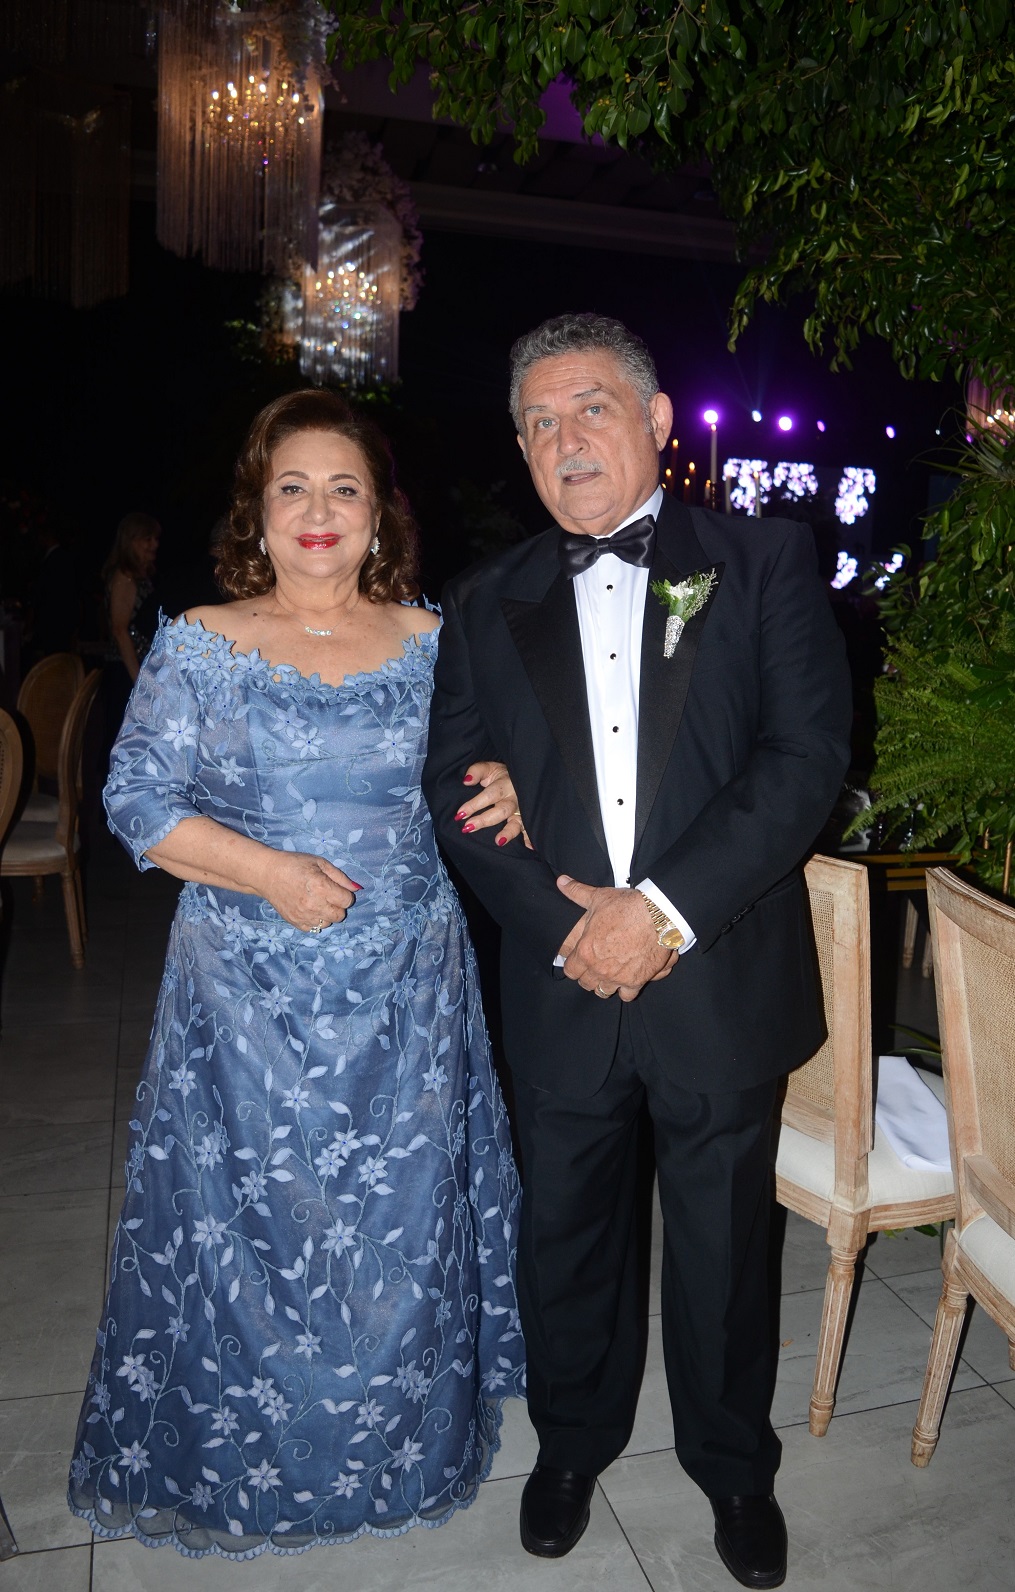 La boda de Basilio Fuschich y Susana Gamero…una gran fiesta de amor con mucha magia